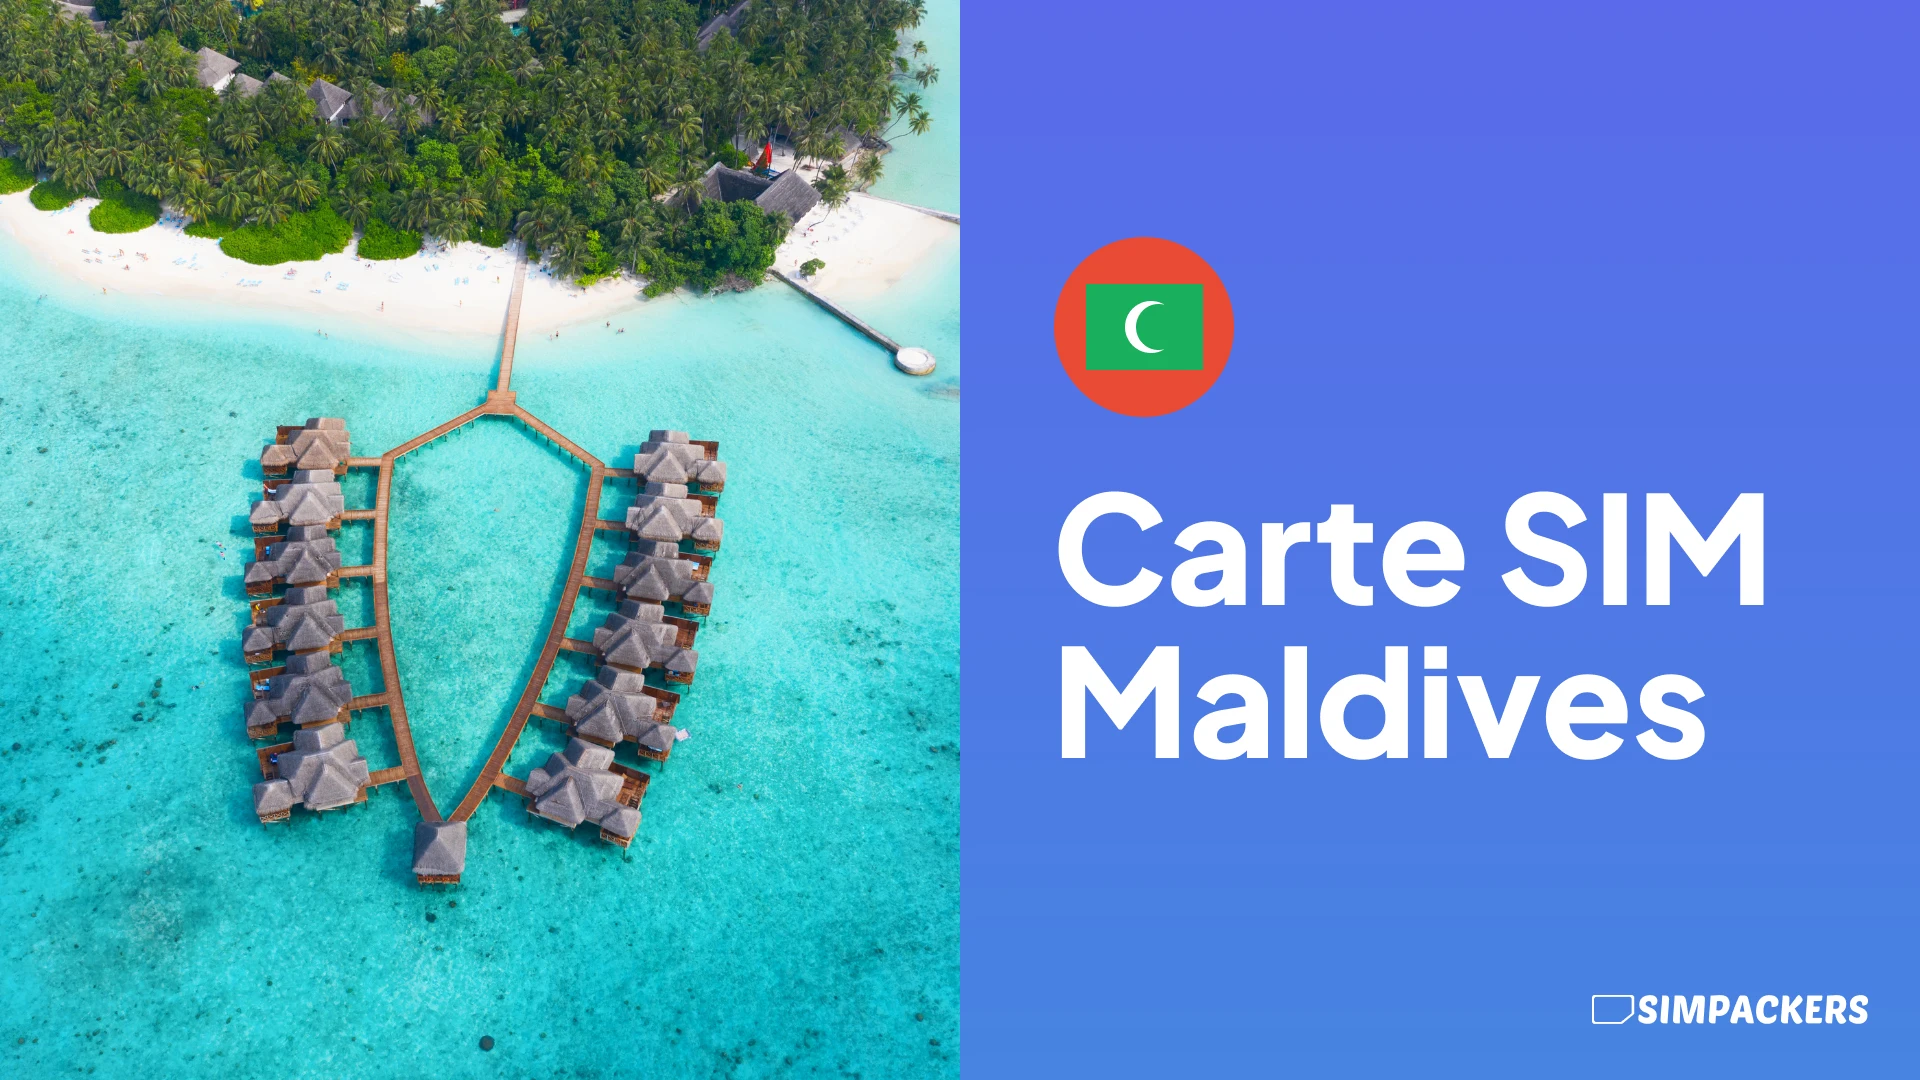 FR/FEATURED_IMAGES/carte-sim-maldives.webp